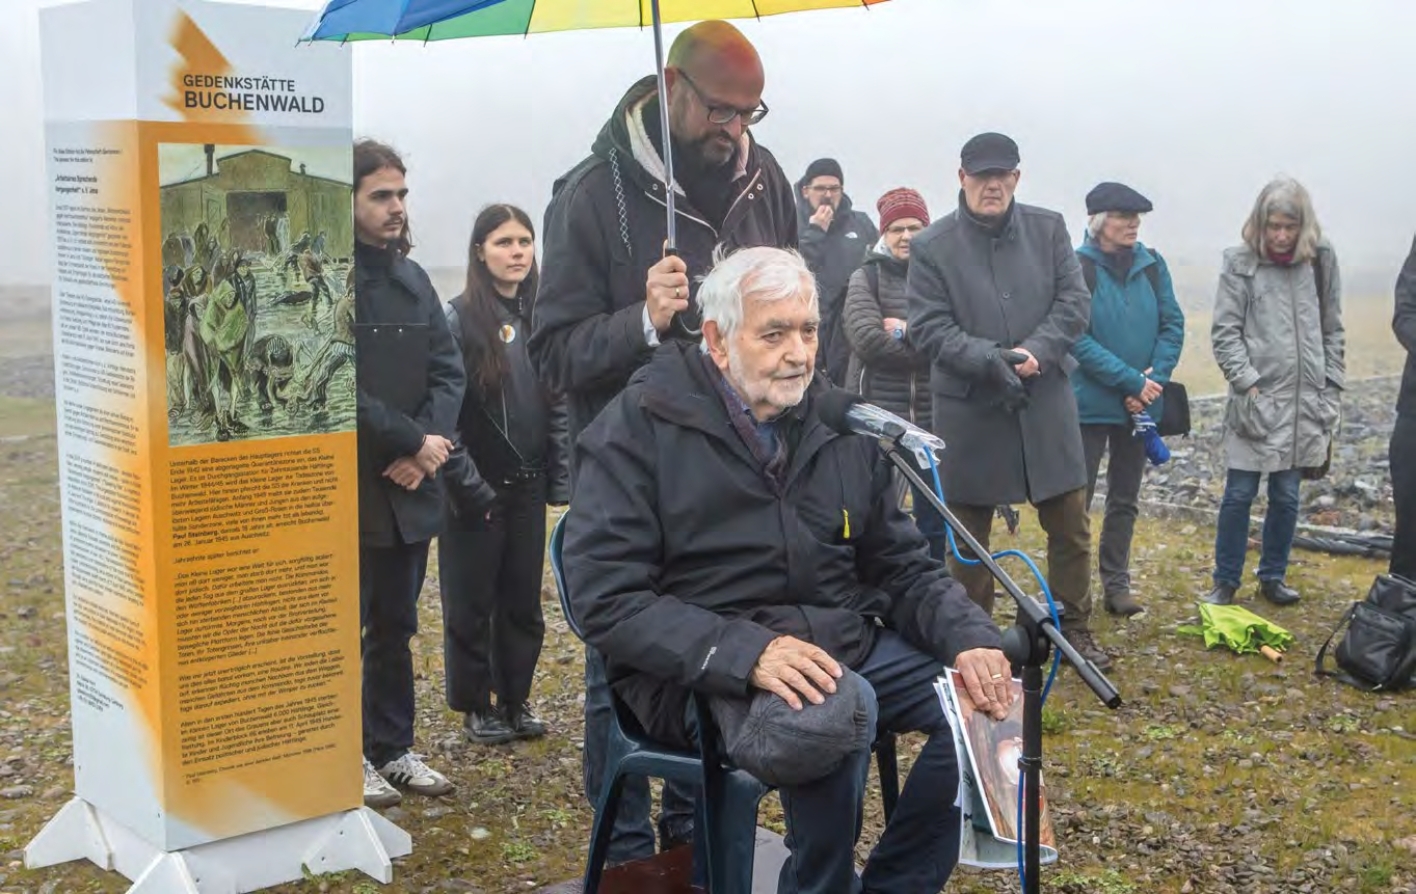 Wolfgang Rug sitzt vor einem Mikrofon und spricht zu der Menge auf dem Lagergelände Buchenwalds